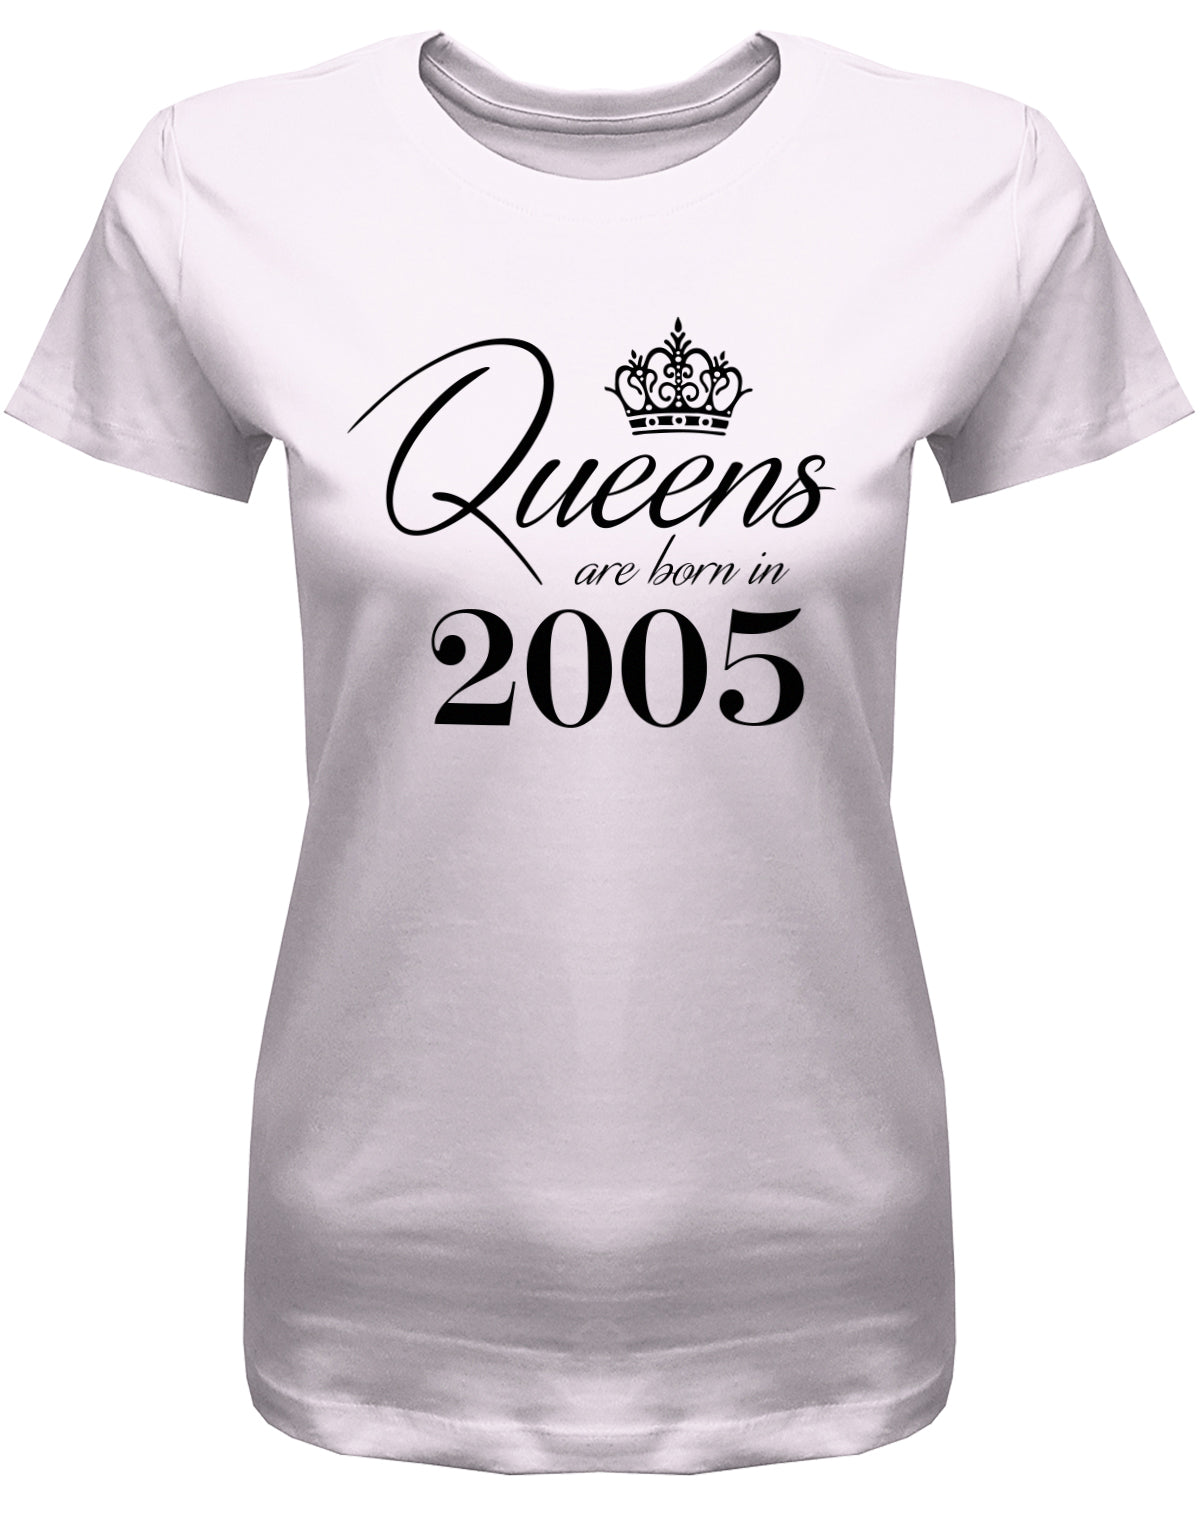 Lustiges T-Shirt zum 18. Geburtstag Mädchen. Bedruckt mit: Queens are born in 2005 - Königin wurden 2005 geboren. Das T Shirt 18 Geburtstag Mädchen Lustig ist ein tolles Geschenk für alle 18 Jährigen. Man wird nur einmal 18 Jahre. Geschenk zum 18 geburtstag Frau ✓ 2005 geburtstag Frau ✓ 18 Geburtstag tshirt ✓ shirt geburtstag 18 Rosa